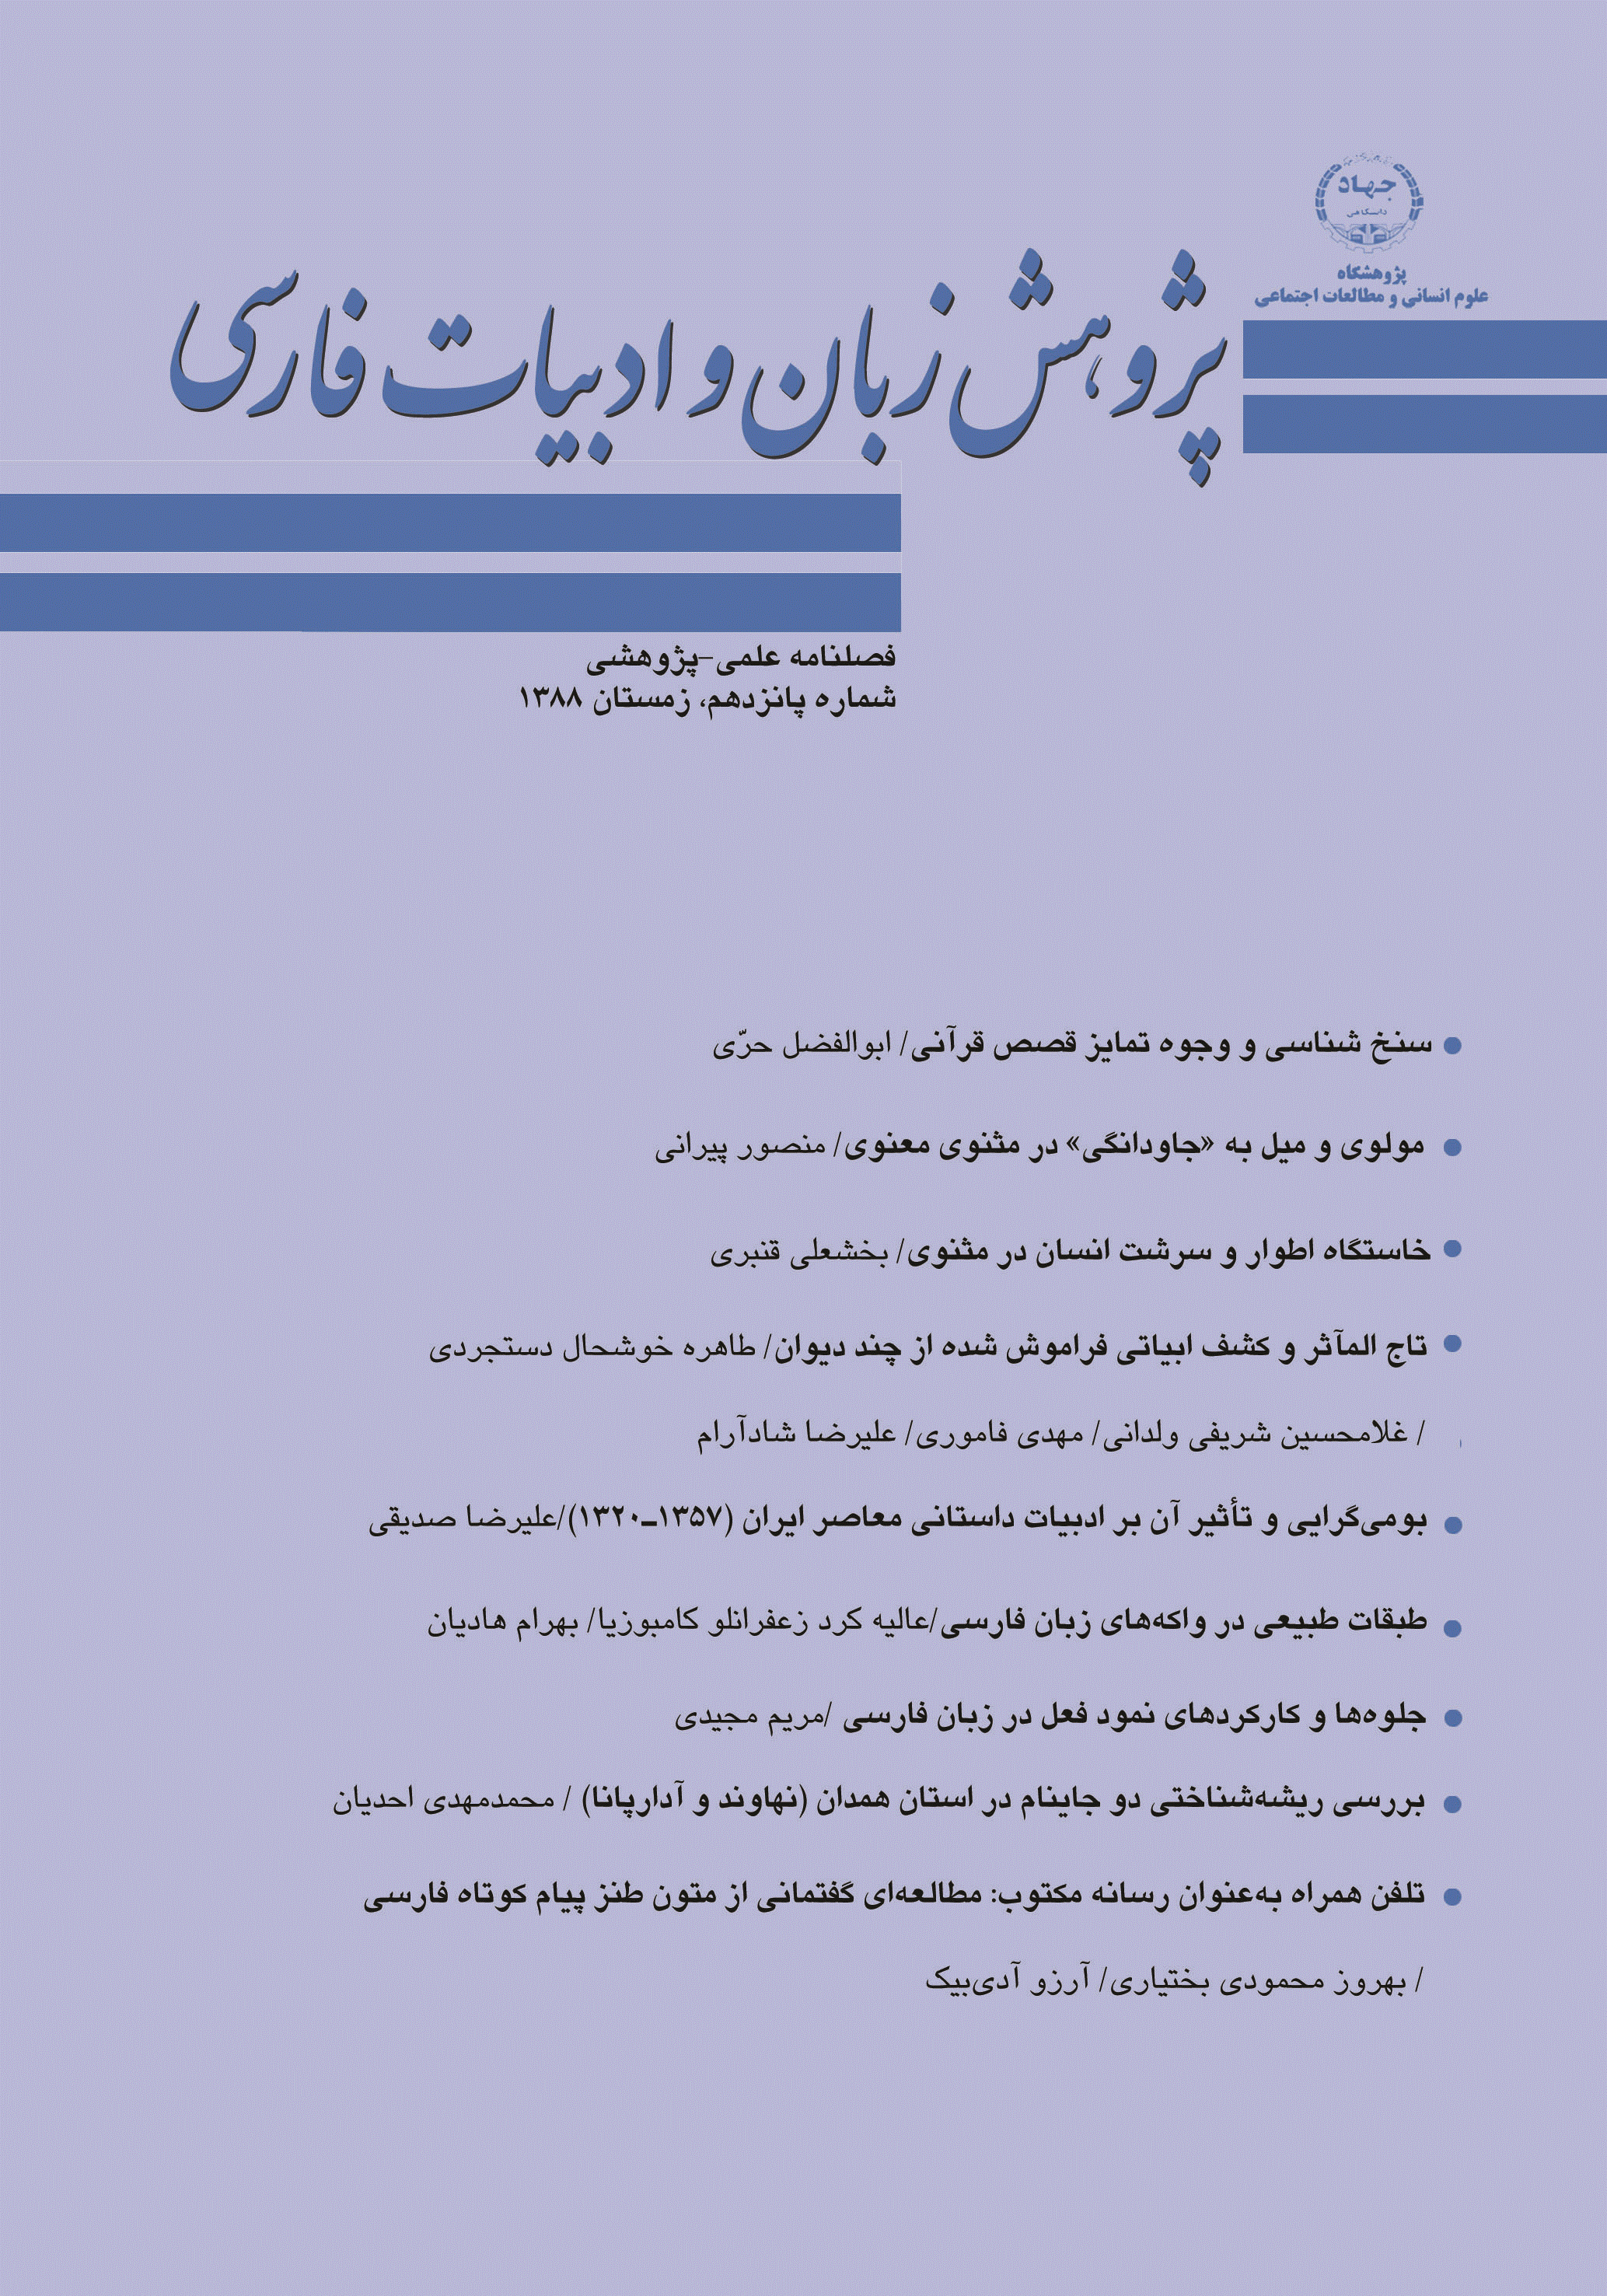 پژوهش زبان و ادبیات فارسی - زمستان 1388 - شماره 15